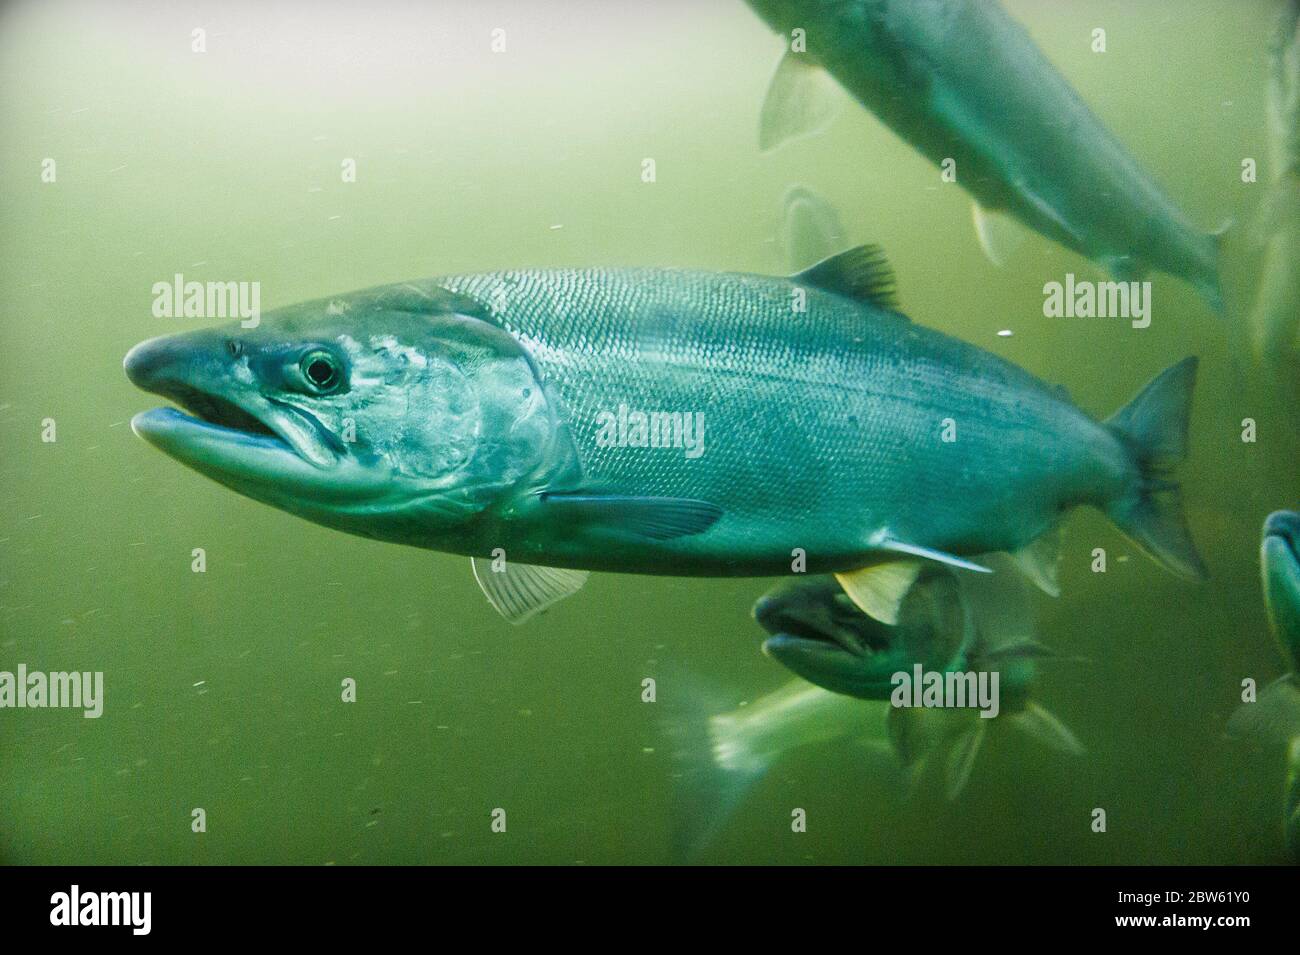 Salmon Swimming in Green Water Stock Photo